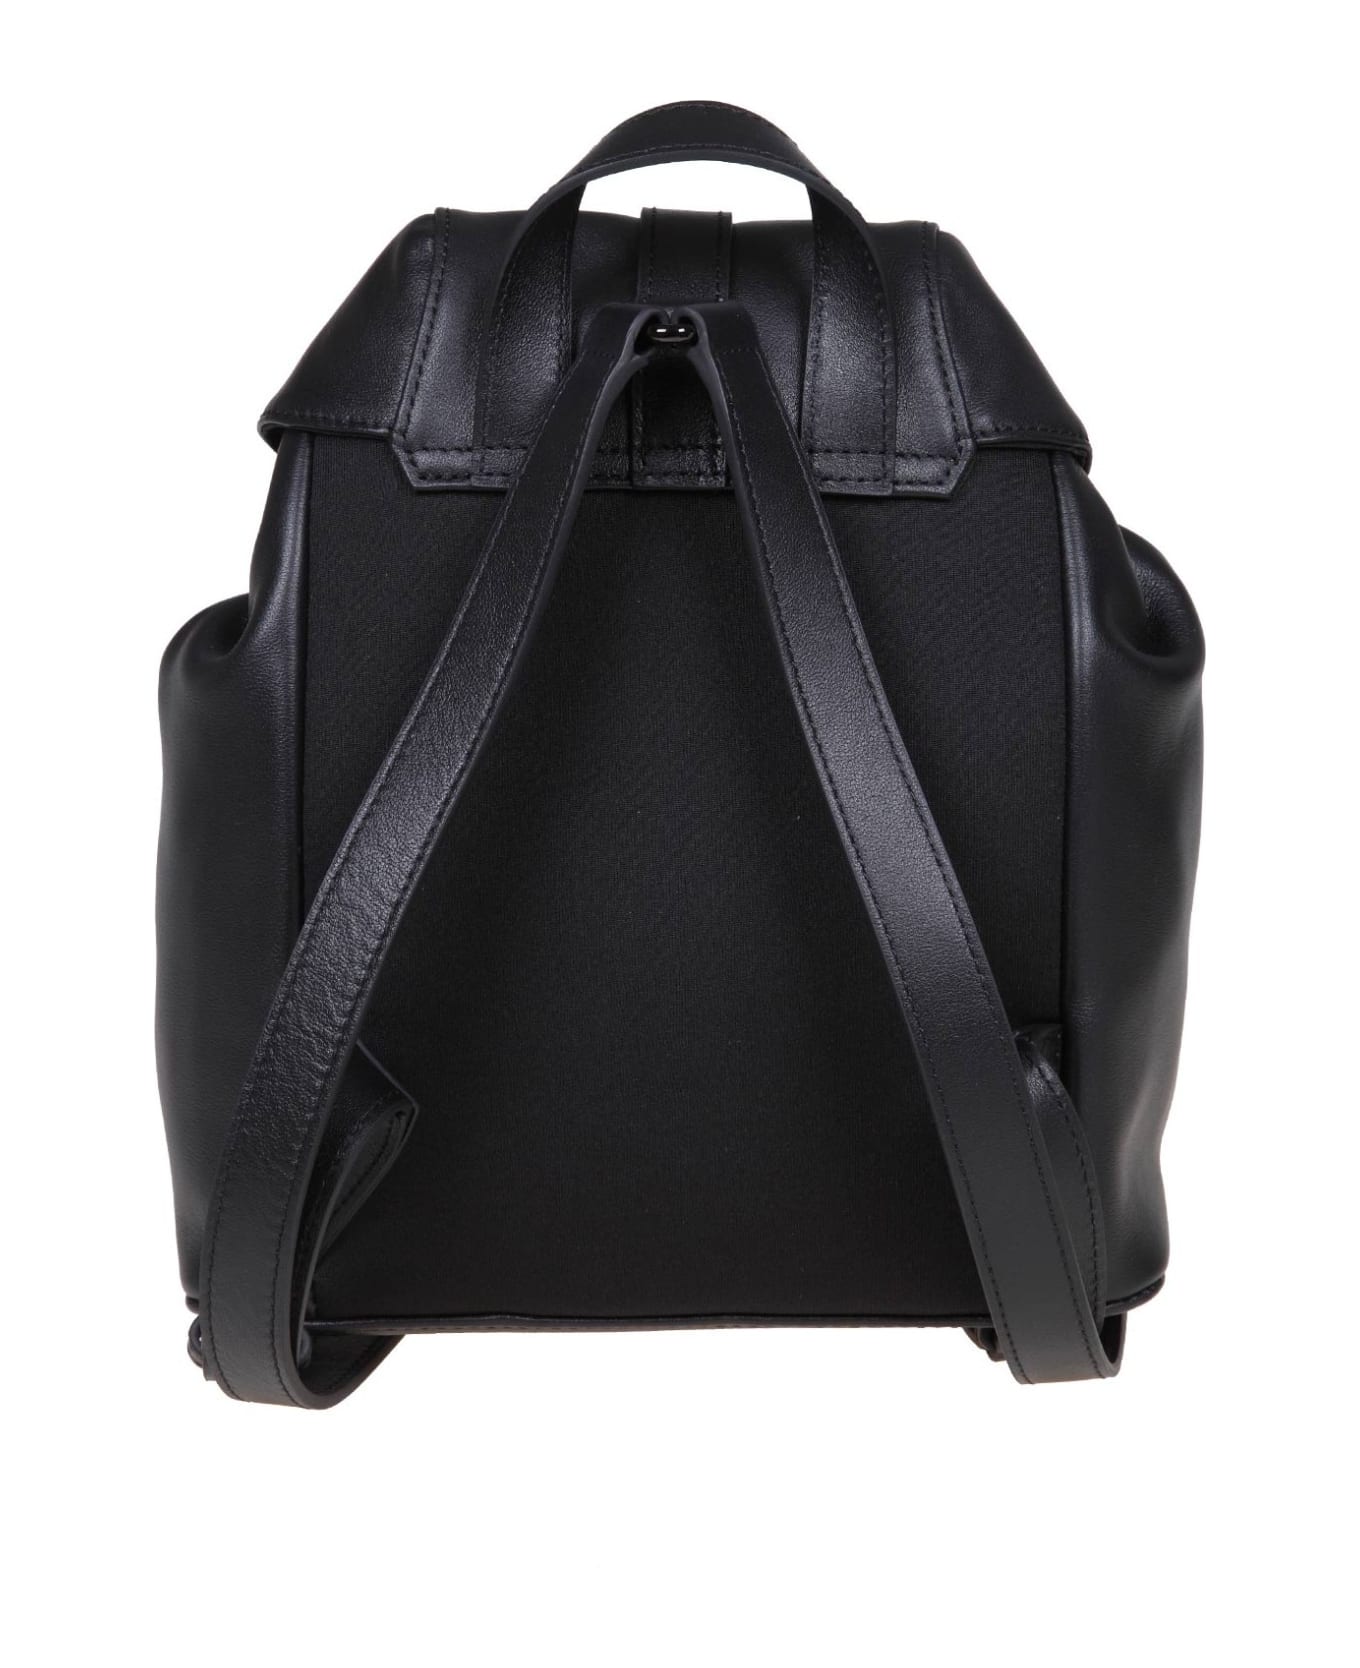 Furla Flow S Black Leather Backpack - Black